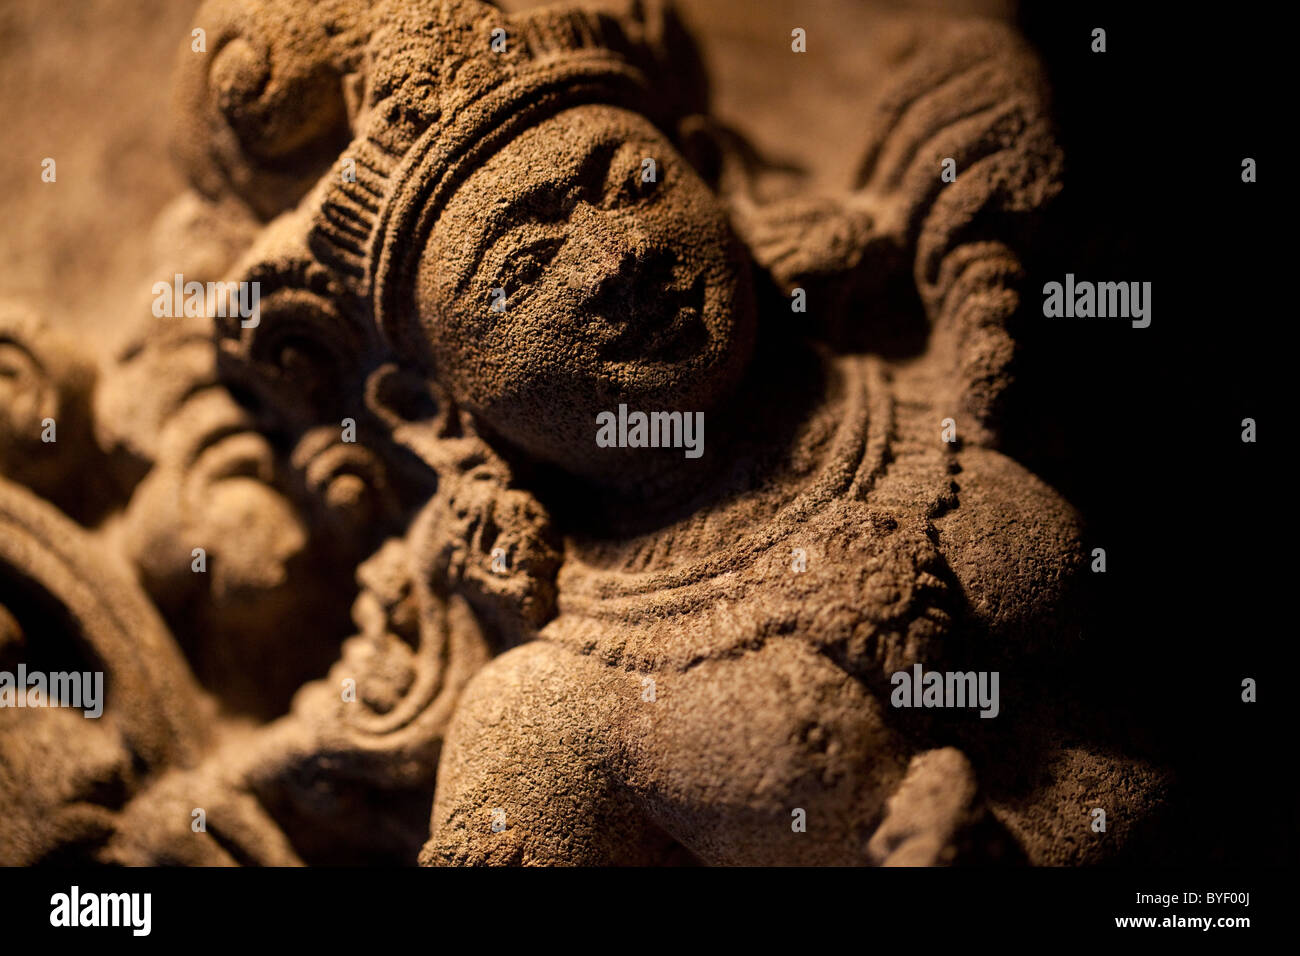 Detalle de una busty bailarina hindú o deidad en una escultura de socorro Foto de stock